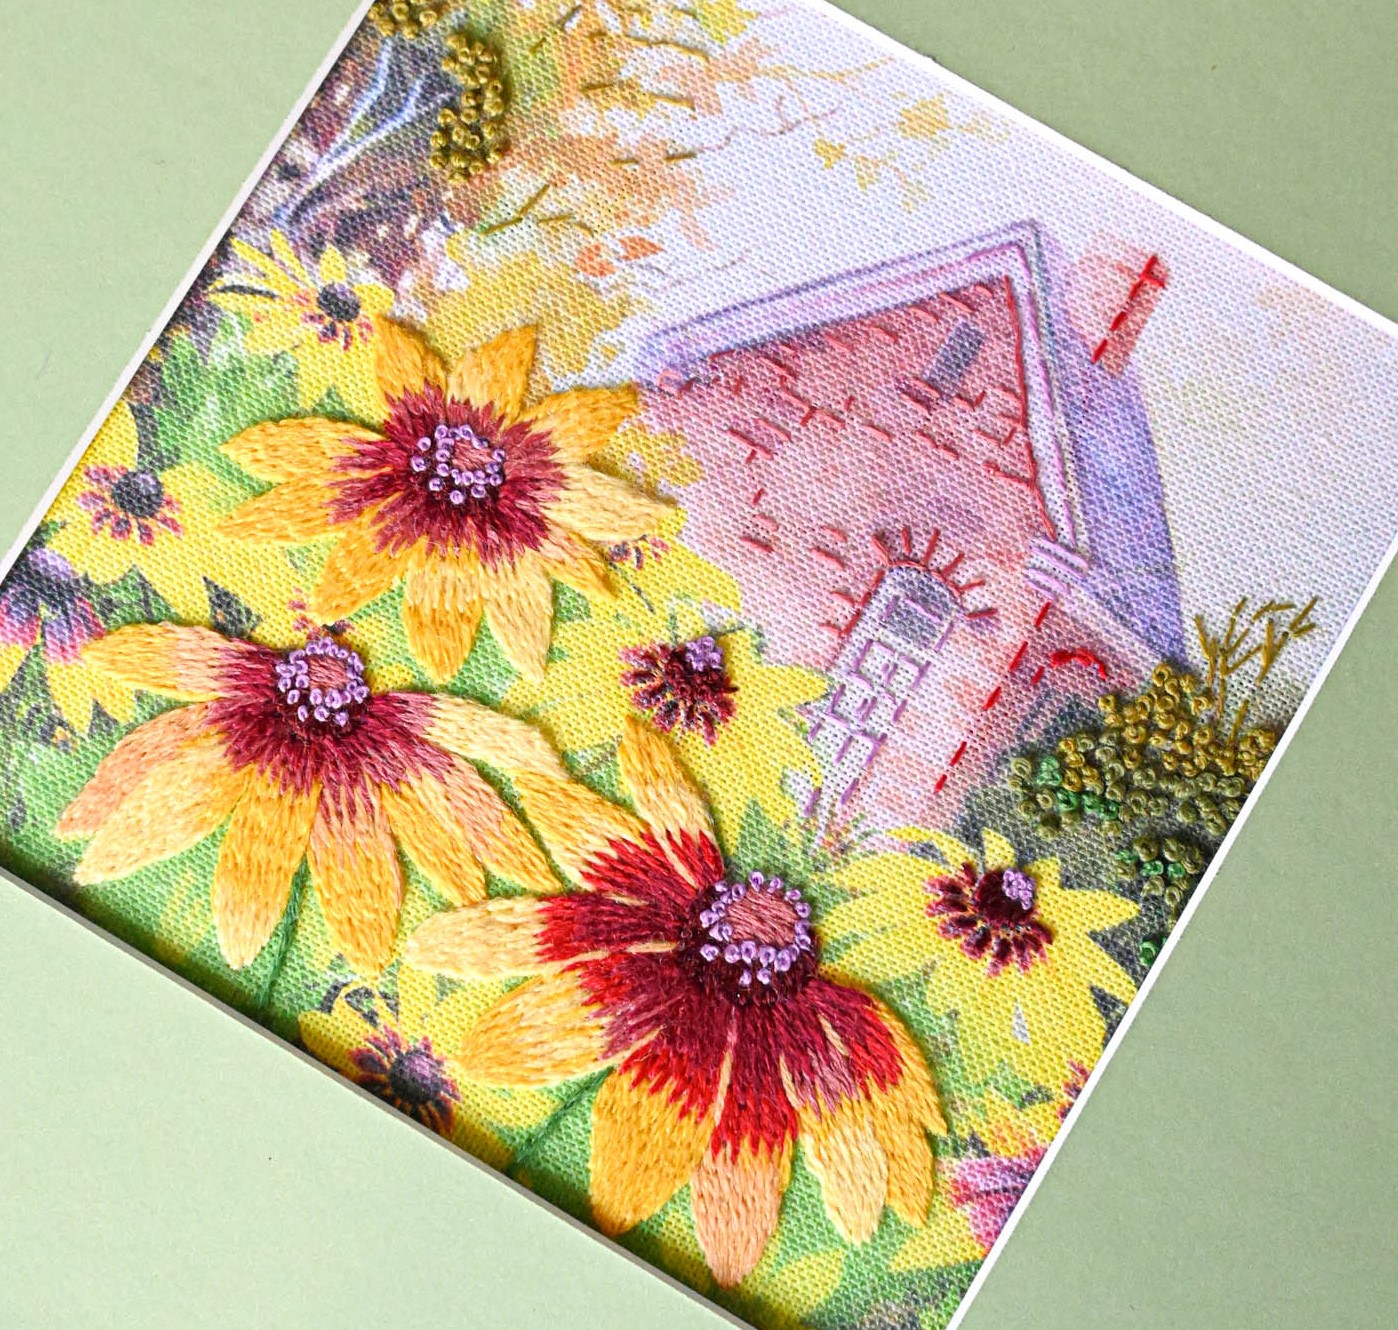 RIOLIS Cross-Stitch Kits - Flower Windowsill Counted Cross-Stitch